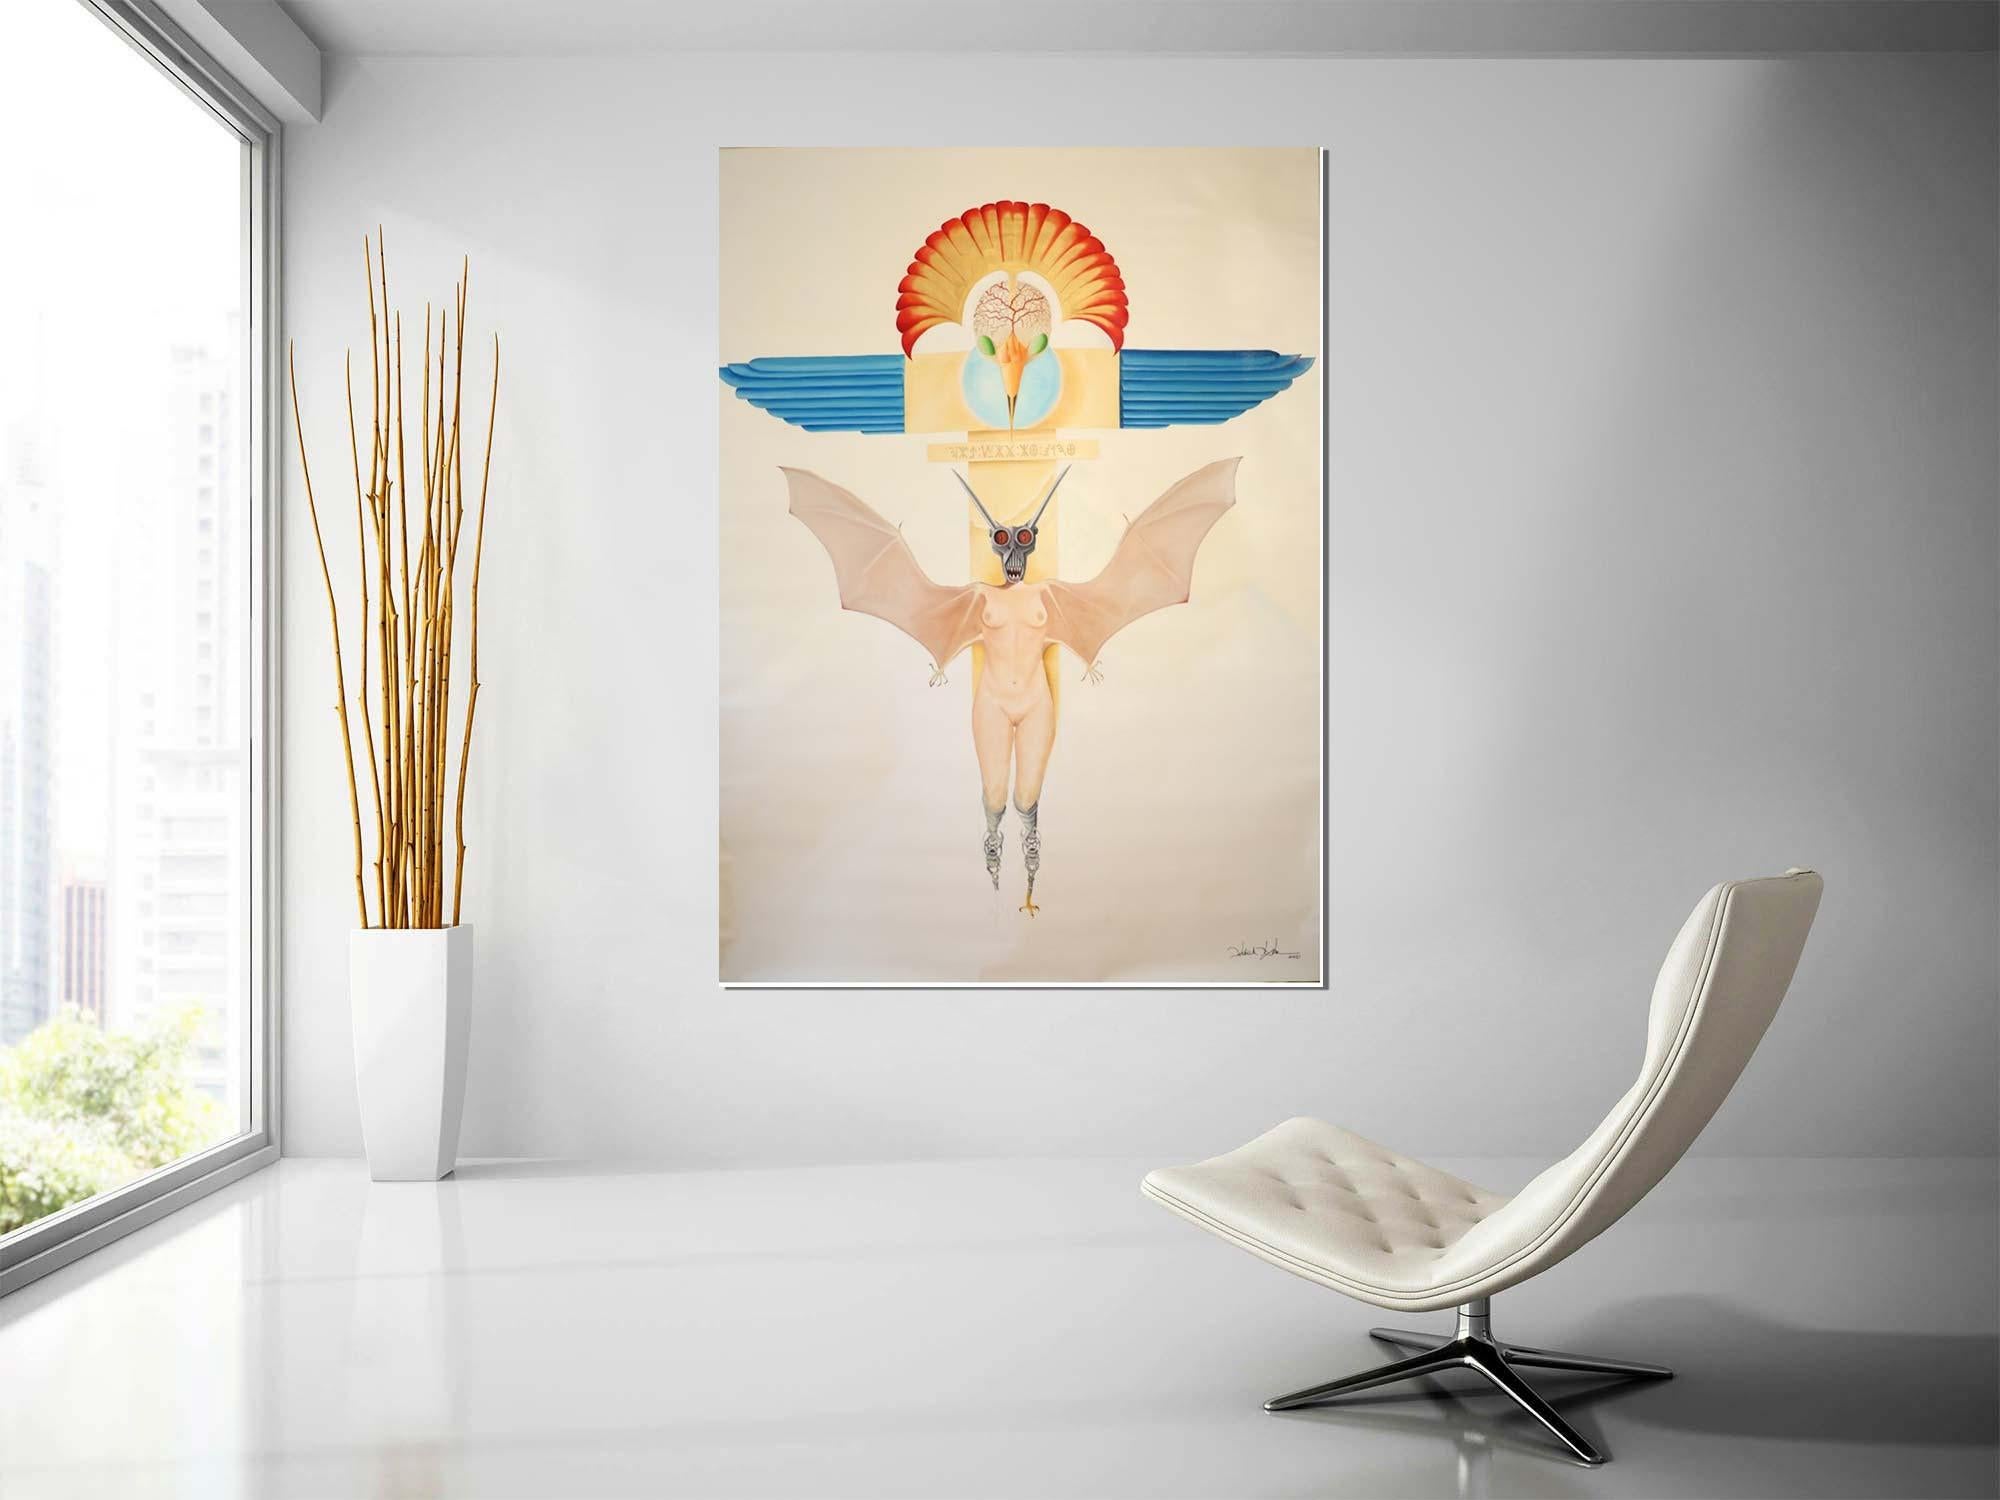 Wings of Fascism - Huile sur toile - Peinture contemporaine - Surréalisme Painting par Patrick Faure